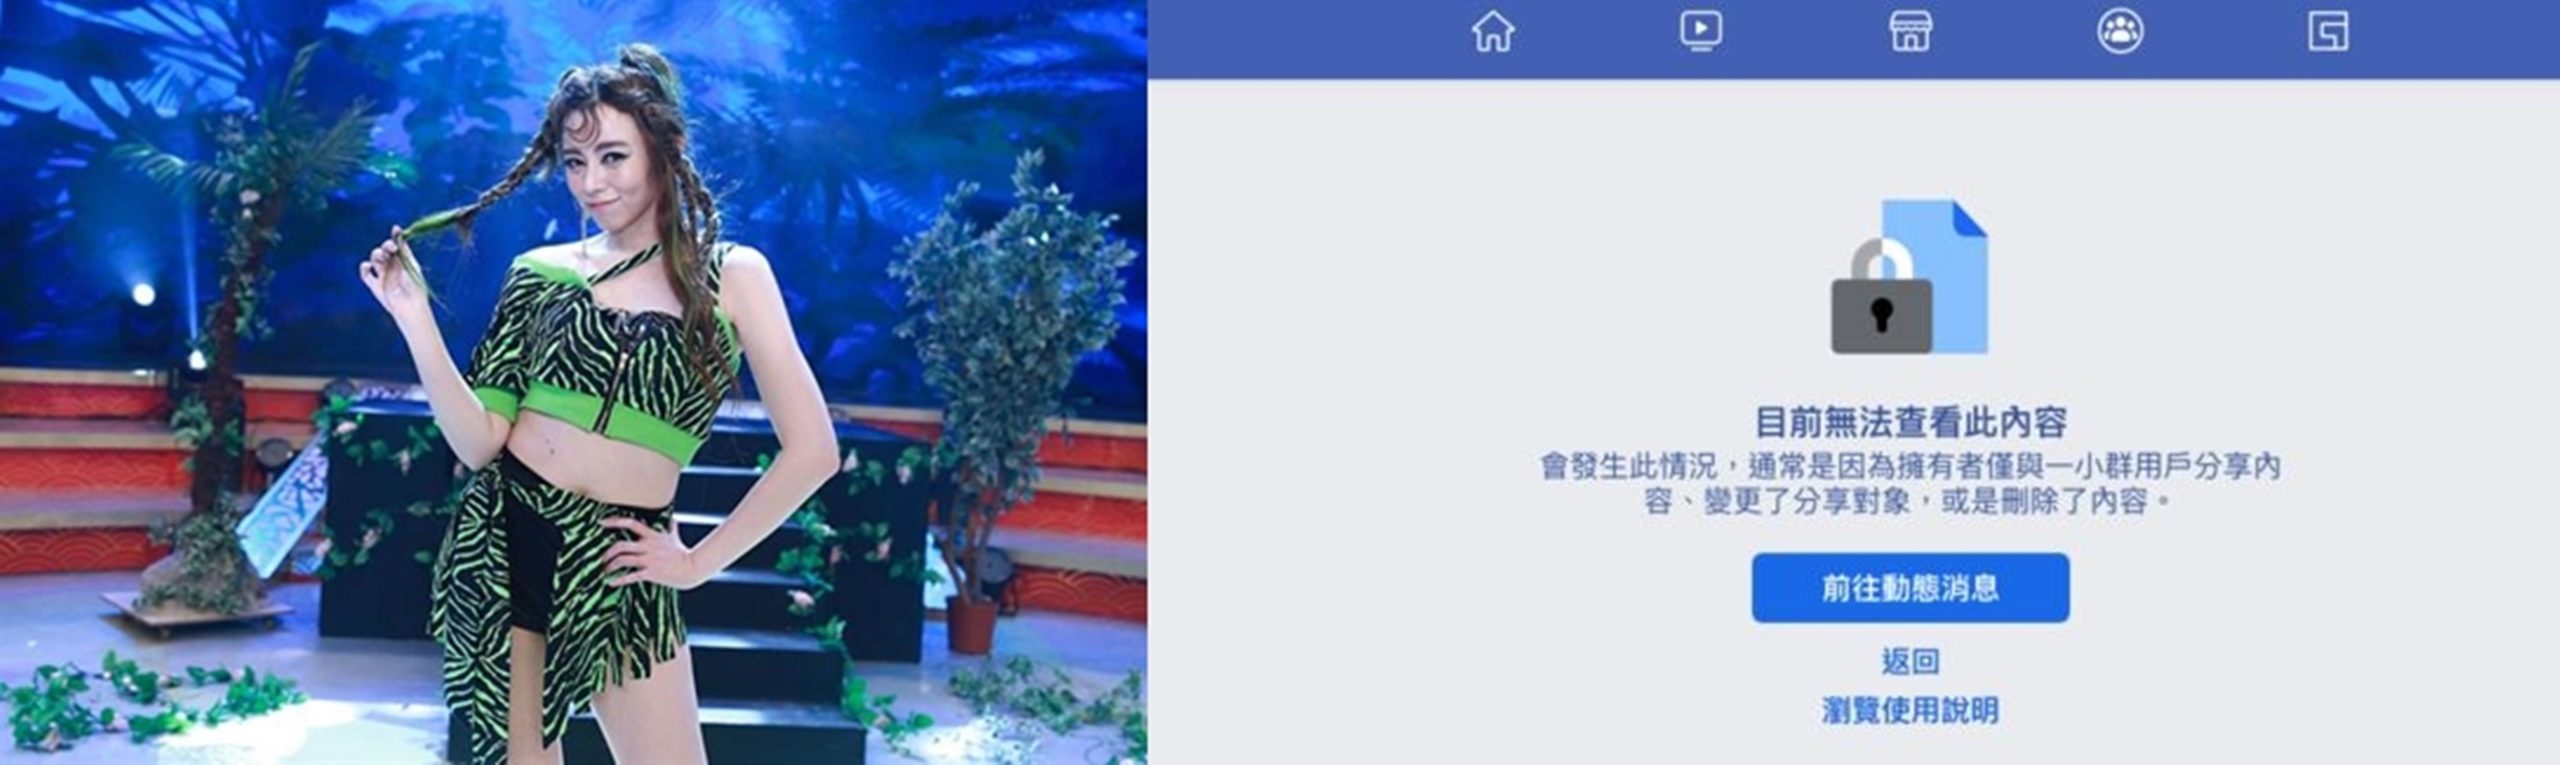 王瞳臉書緊急關閉。